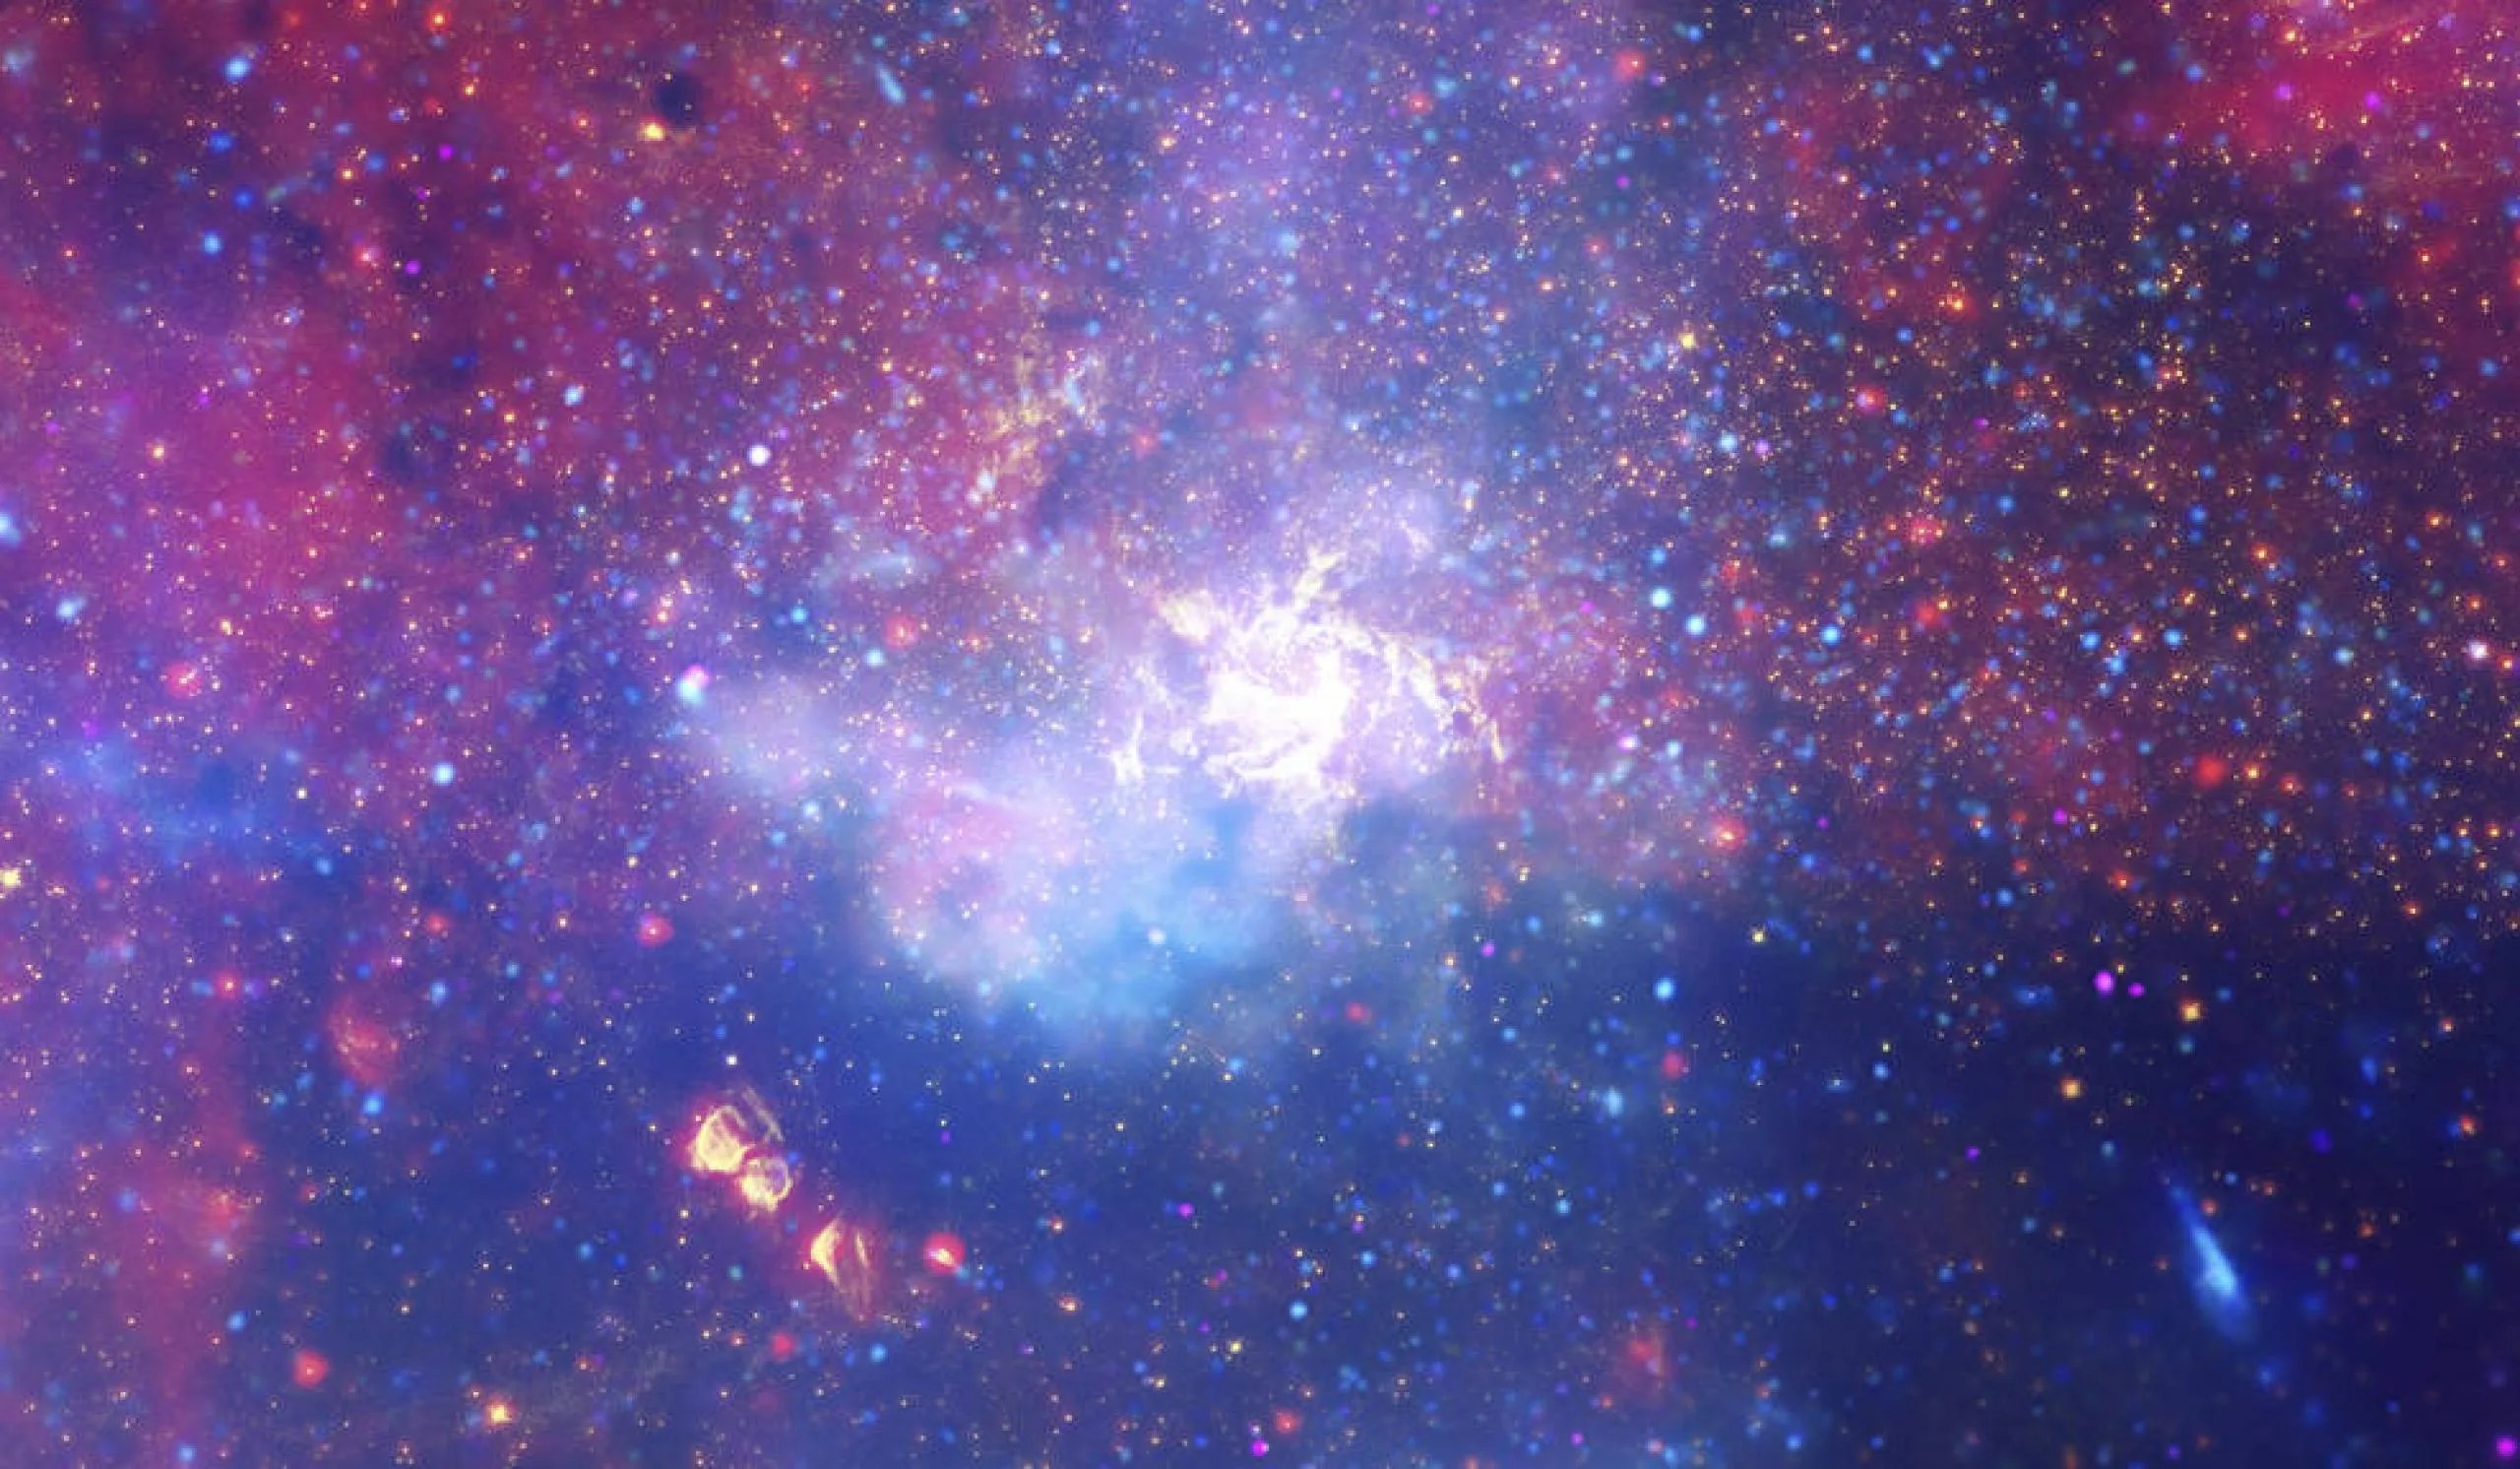 Un enorme remolino de gas caliente brilla con luz infrarroja, marcando la ubicación aproximada del agujero negro supermasivo en el corazón de nuestra galaxia, la Vía Láctea.